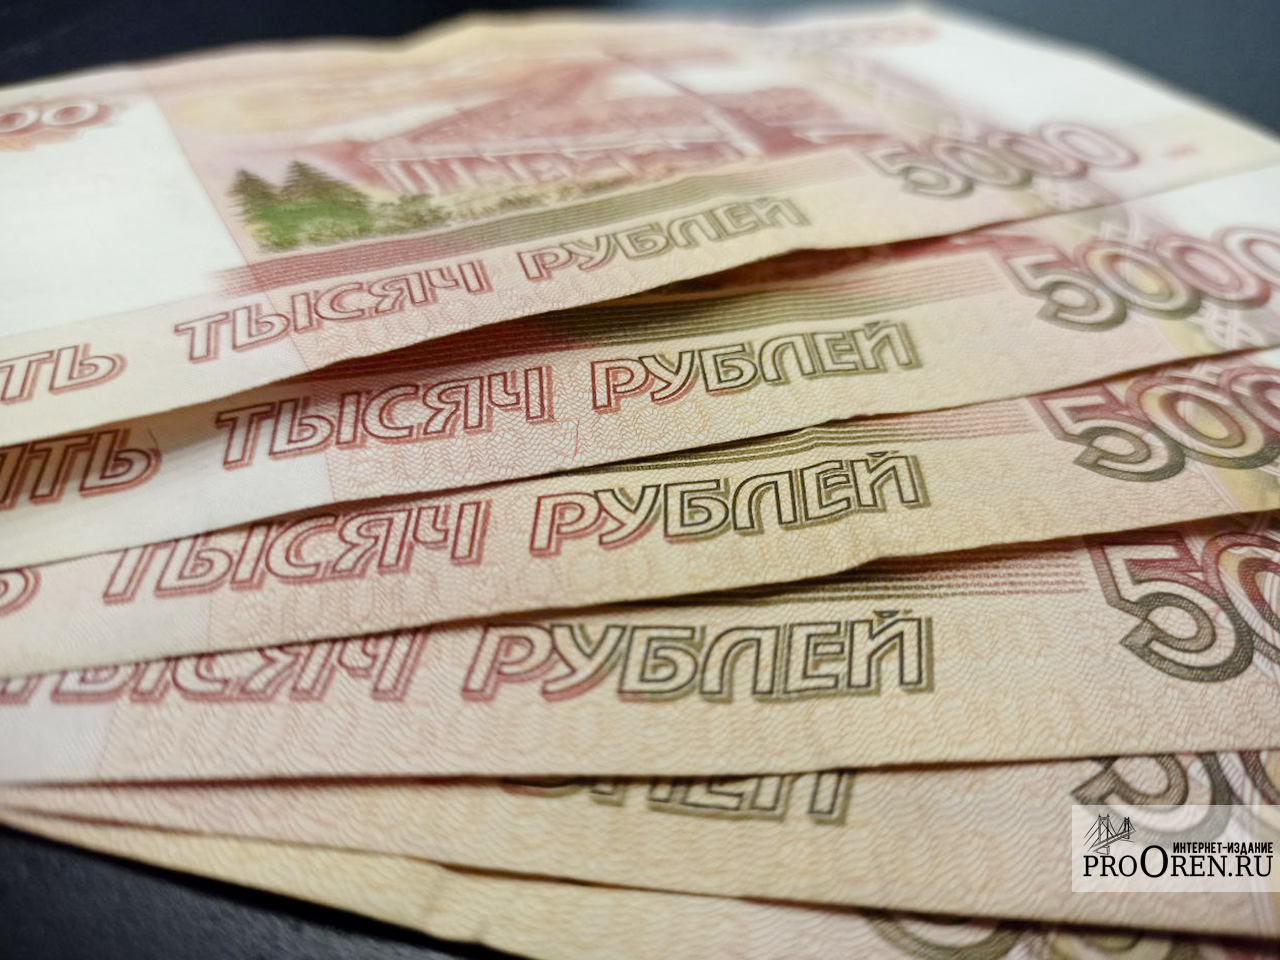 Продавец сетевого магазина в Орске присвоила более 600 тысяч рублей